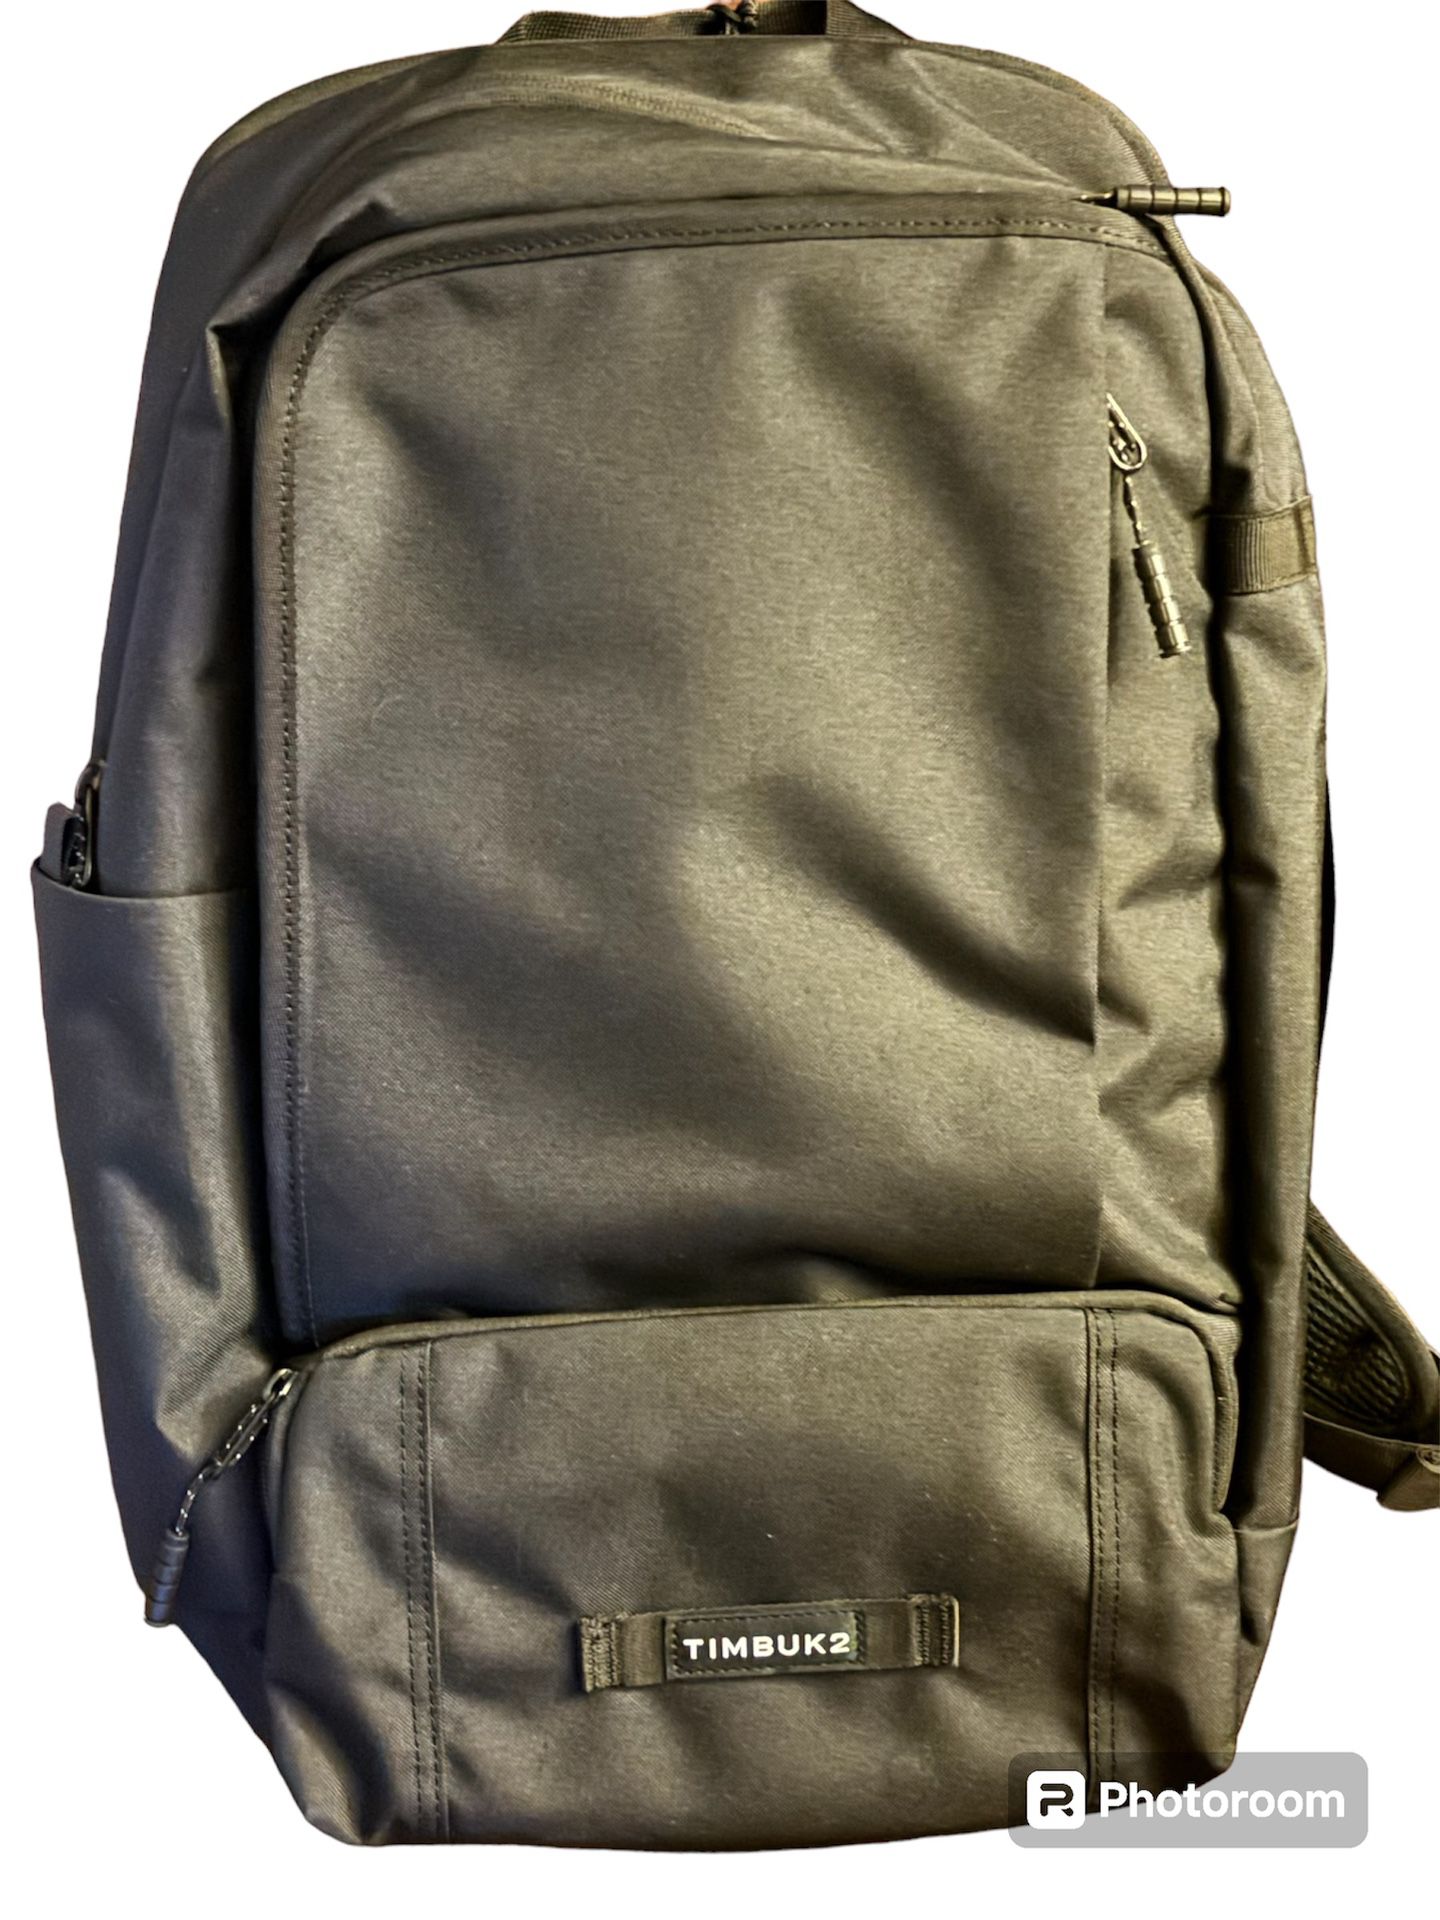 timbuk2 backpack